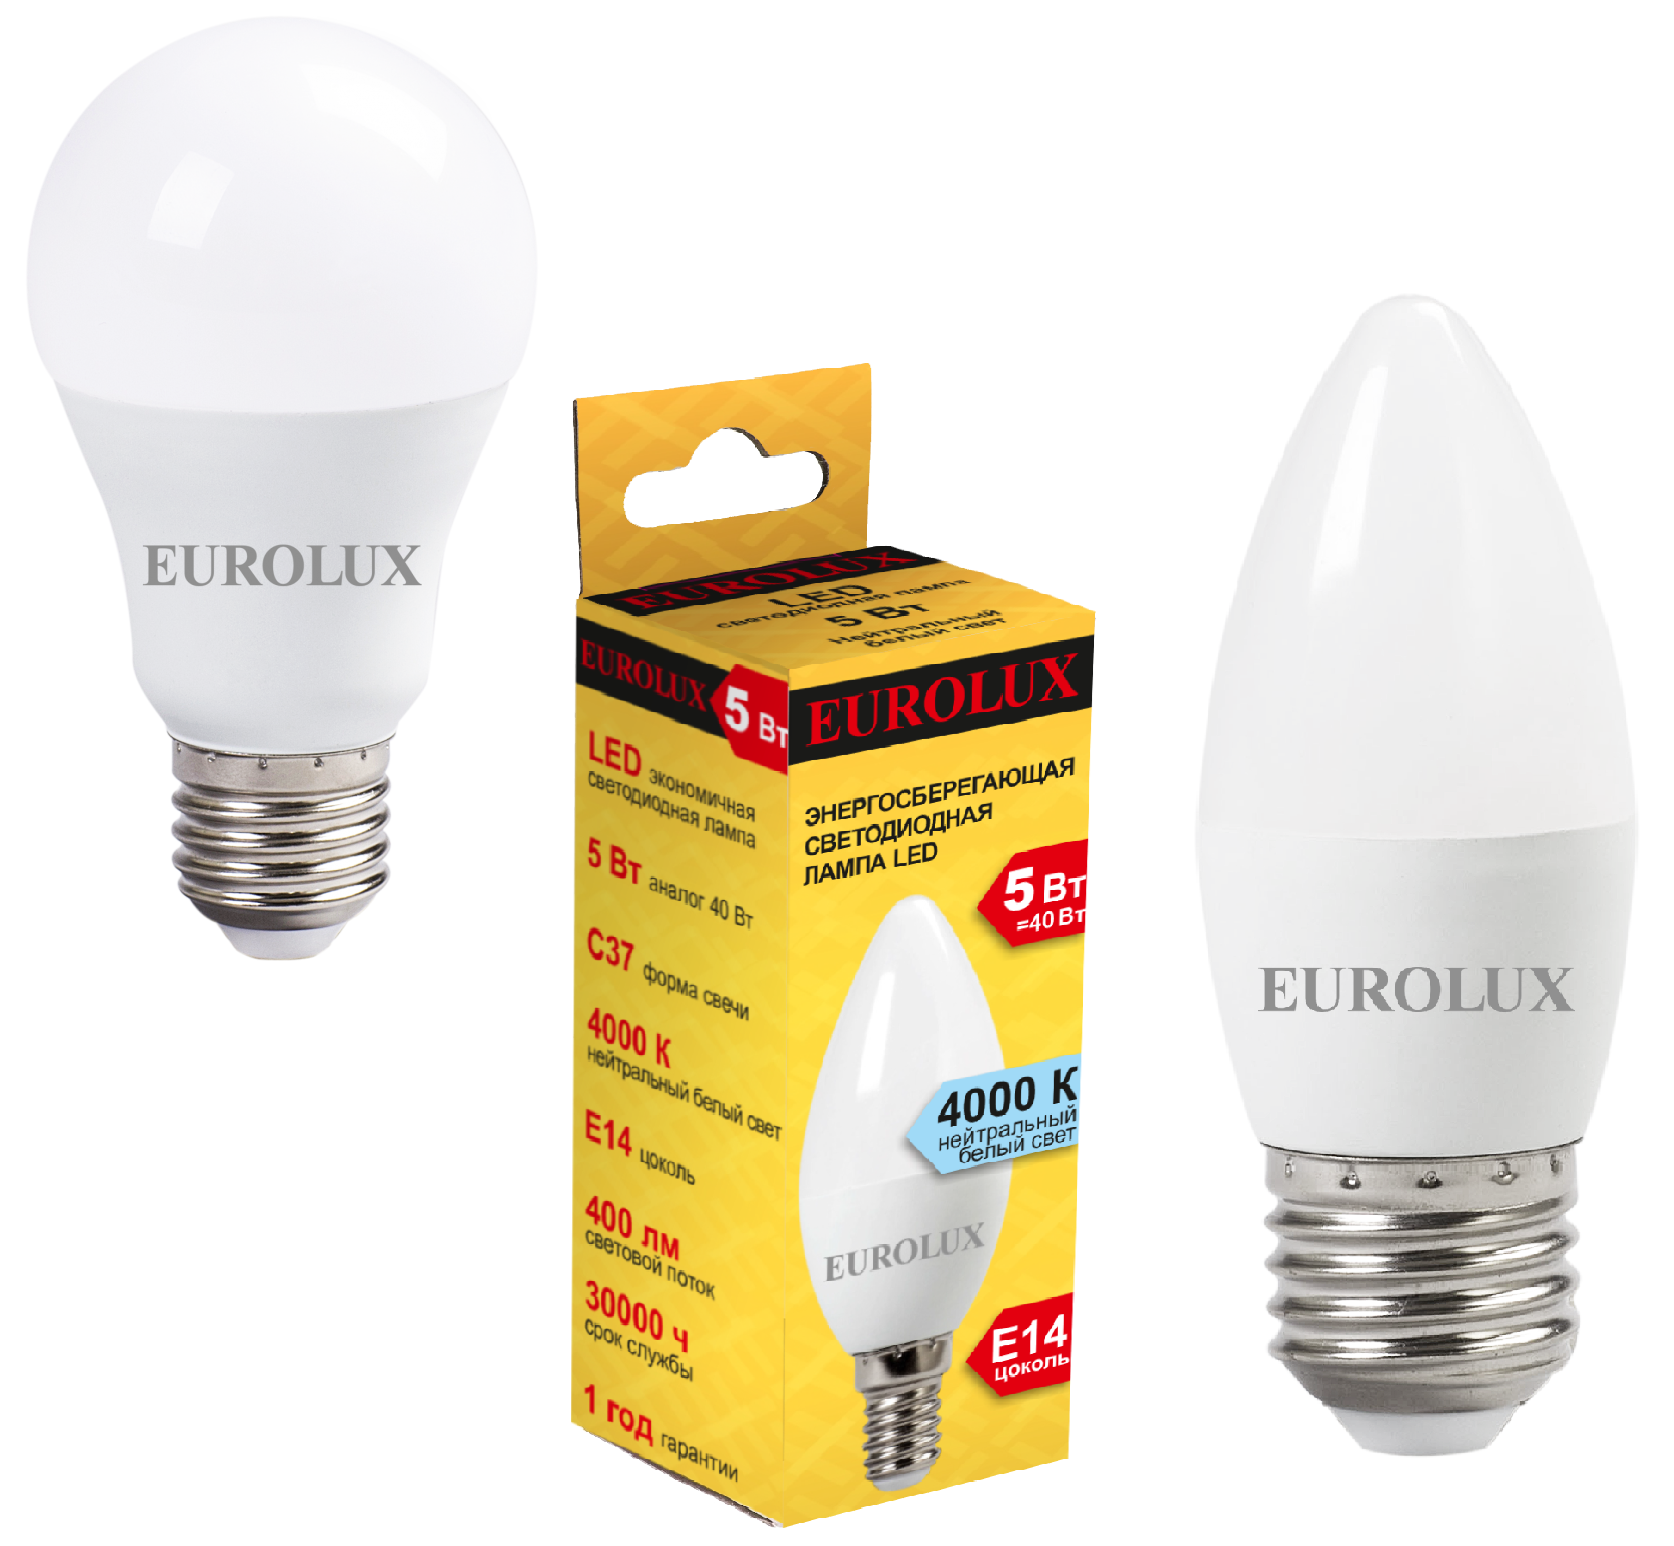 Купить светодиодные лампы LED е27, е14, gu 5.3  по цене .